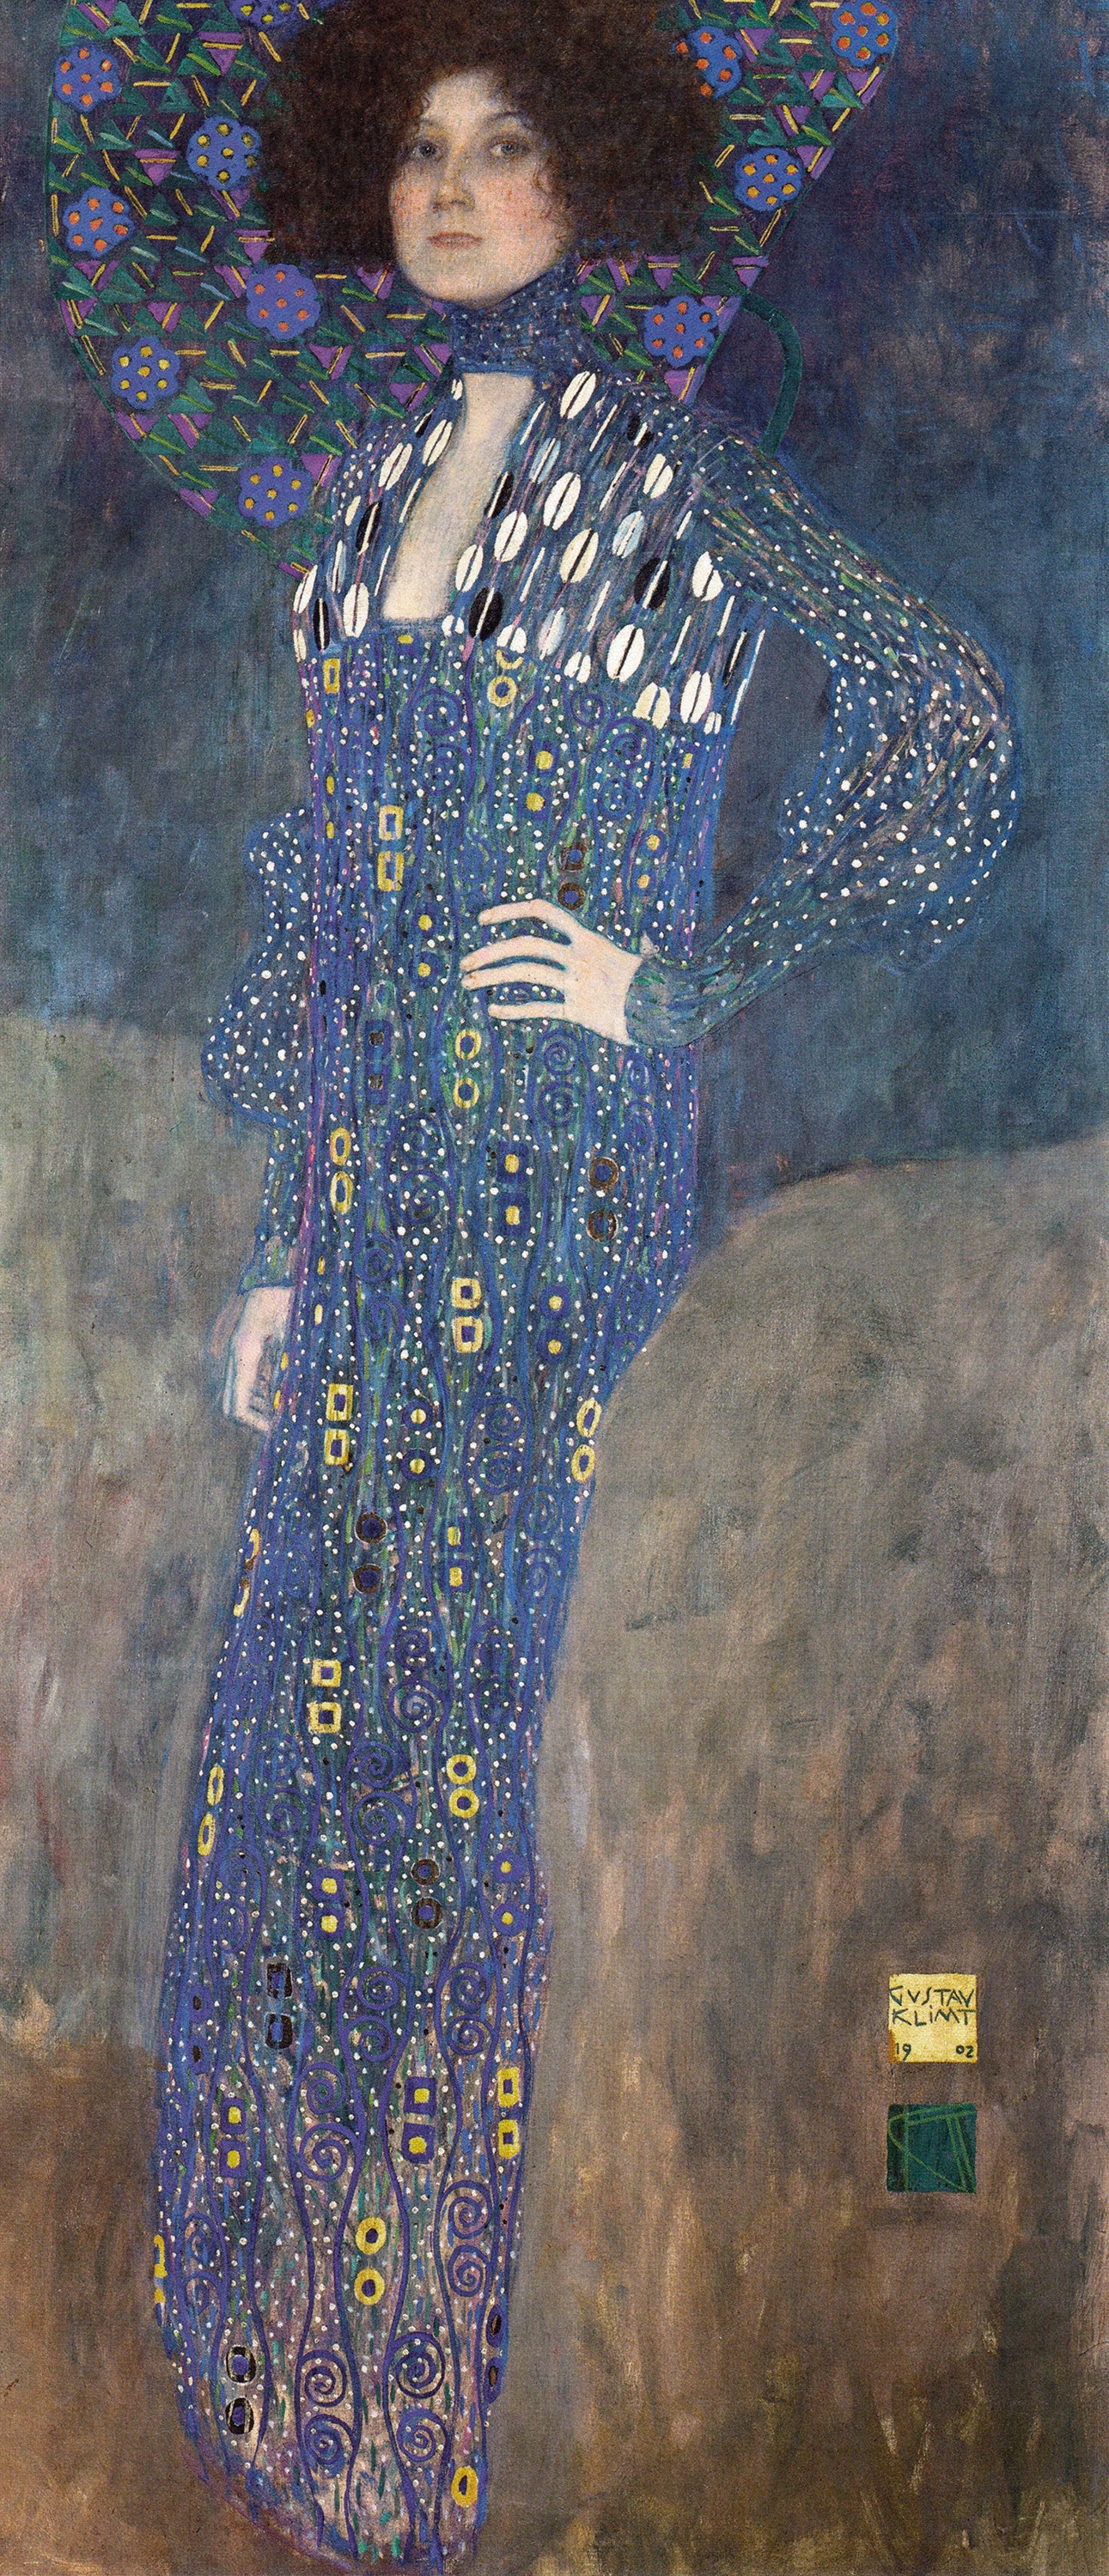 Portrait of Emilie Flöge, Gustav Klimt